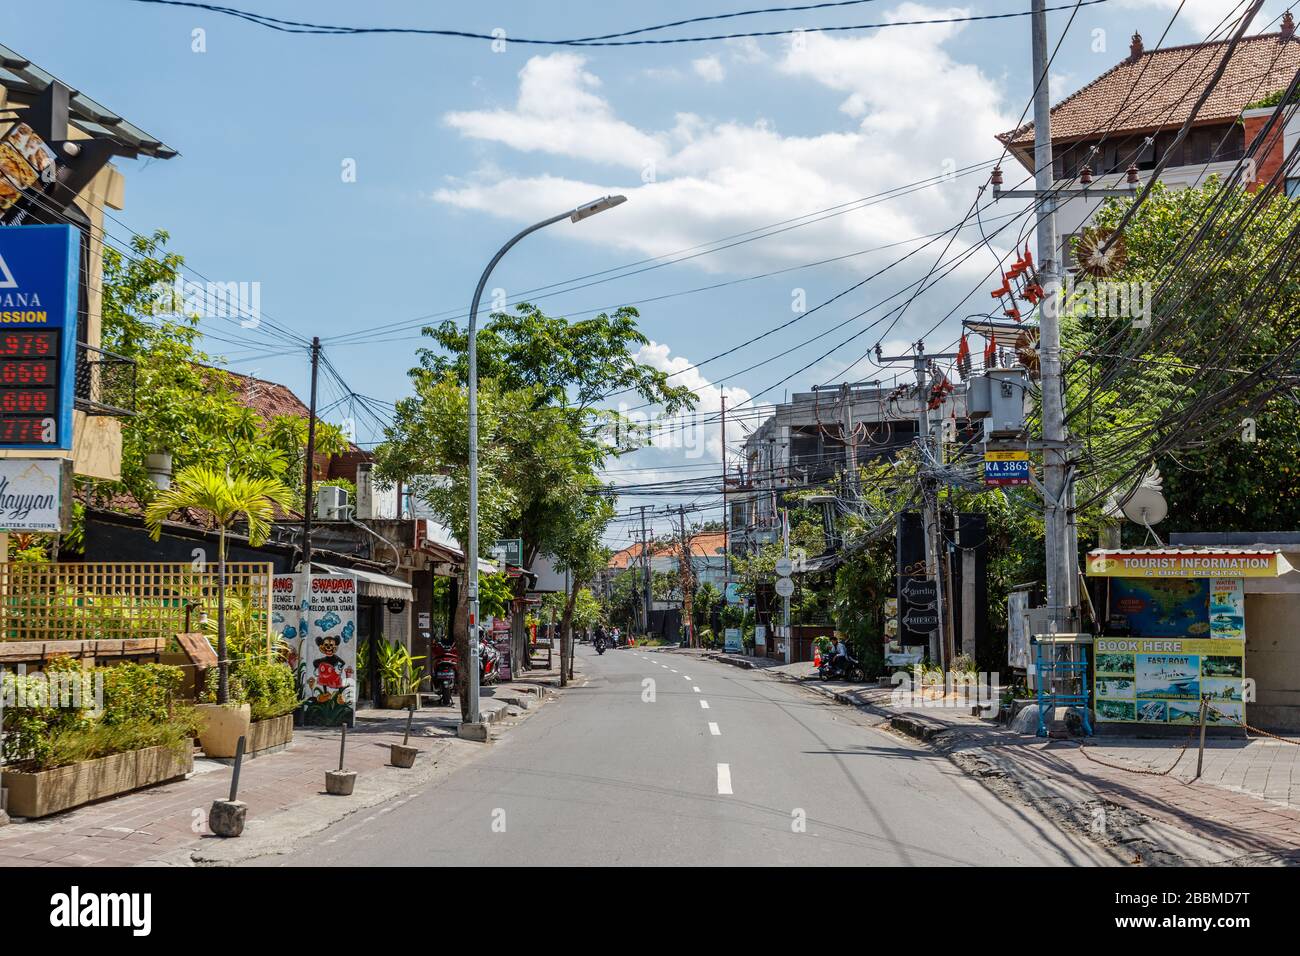 Avril 01, 2020. Rues vides de Bali. Quarantaine pour COVID-19. Petitenget, l'un des quartiers touristiques les plus populaires de Bali. Indonésie. Banque D'Images